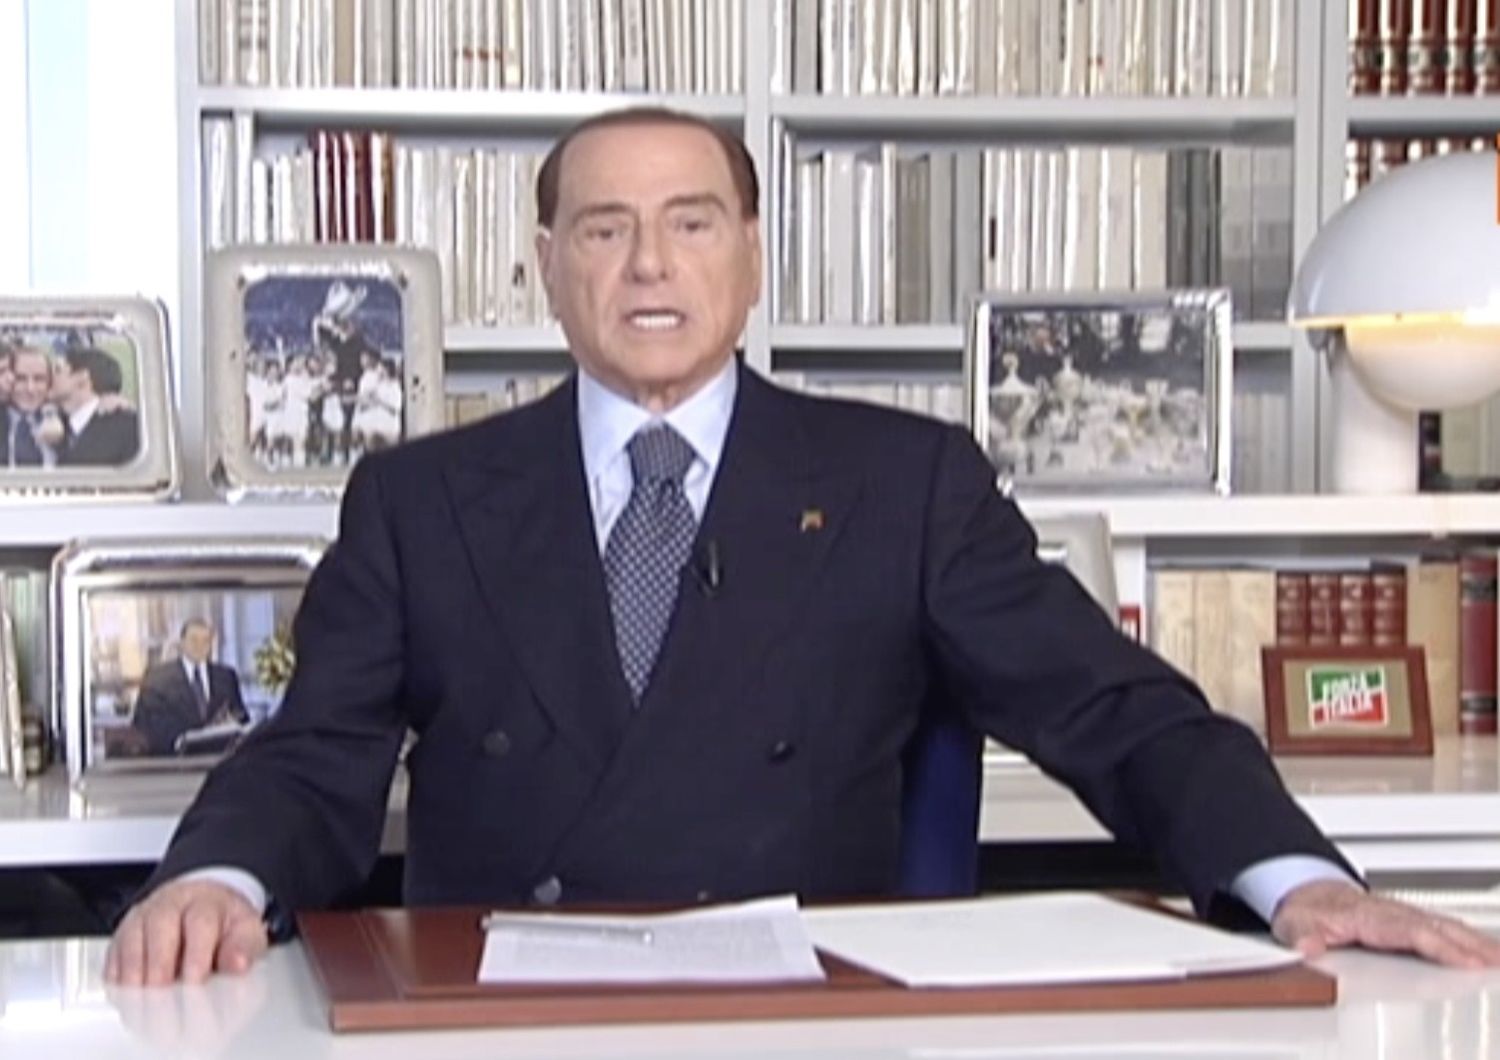 &nbsp;Berlusconi